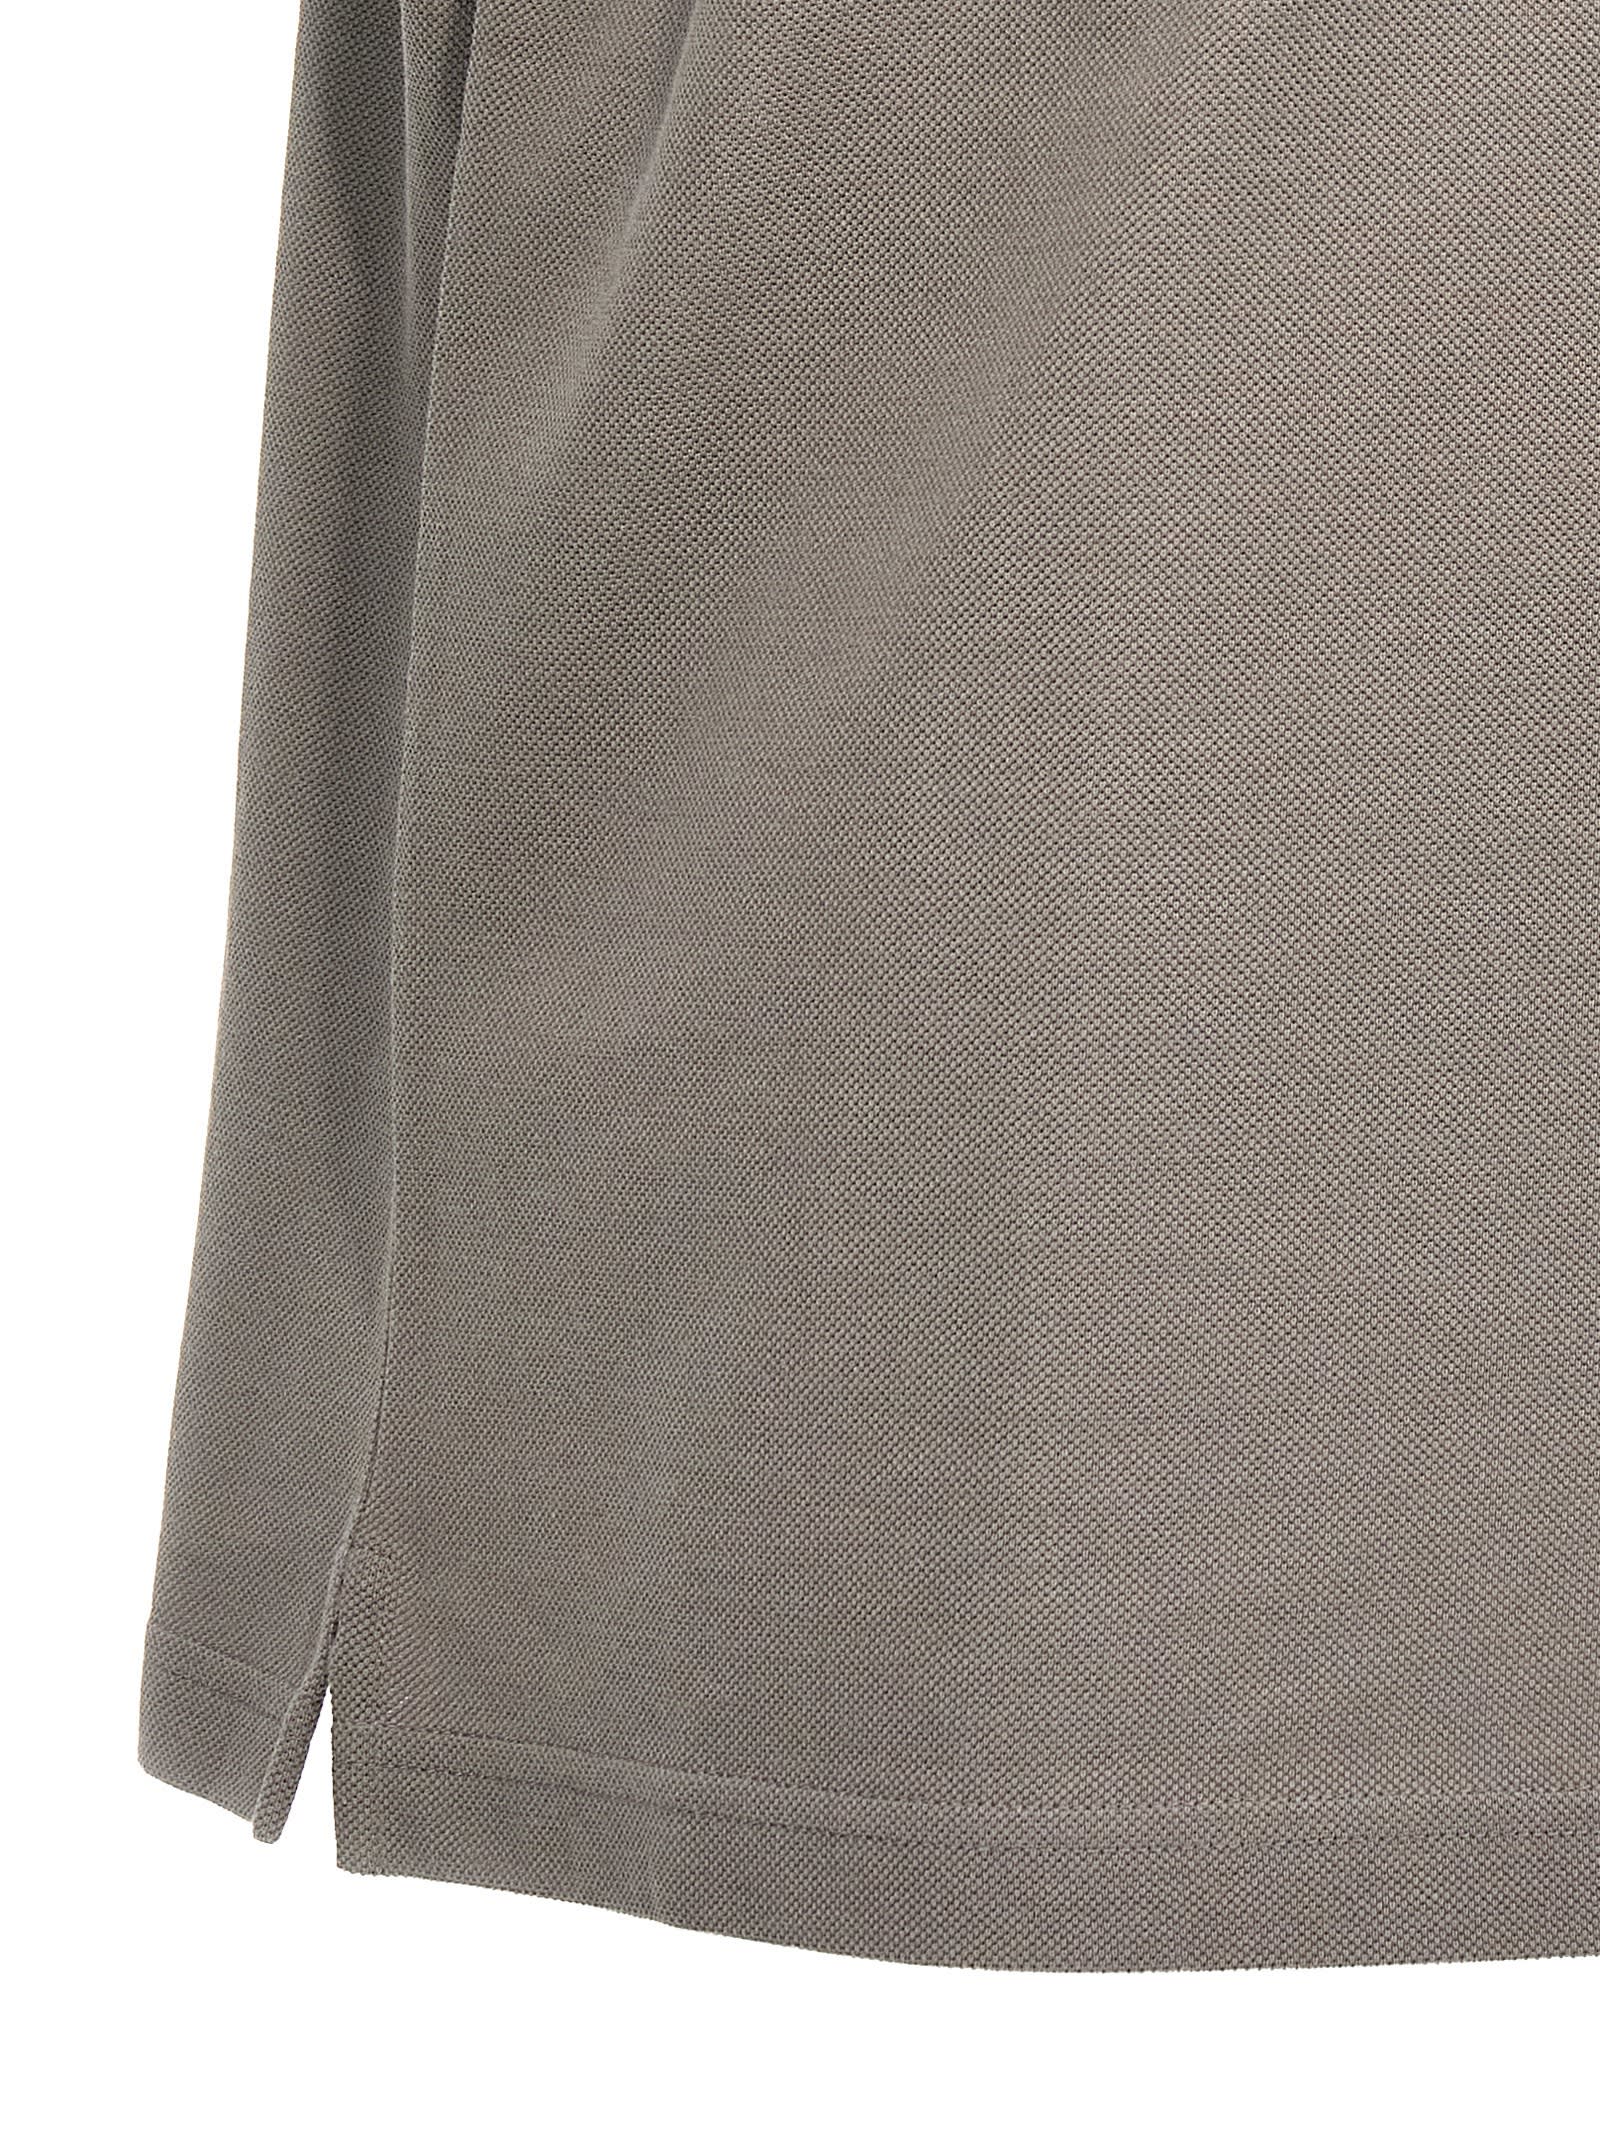 Shop Lanvin Logo Embroidery Polo Shirt In Gray